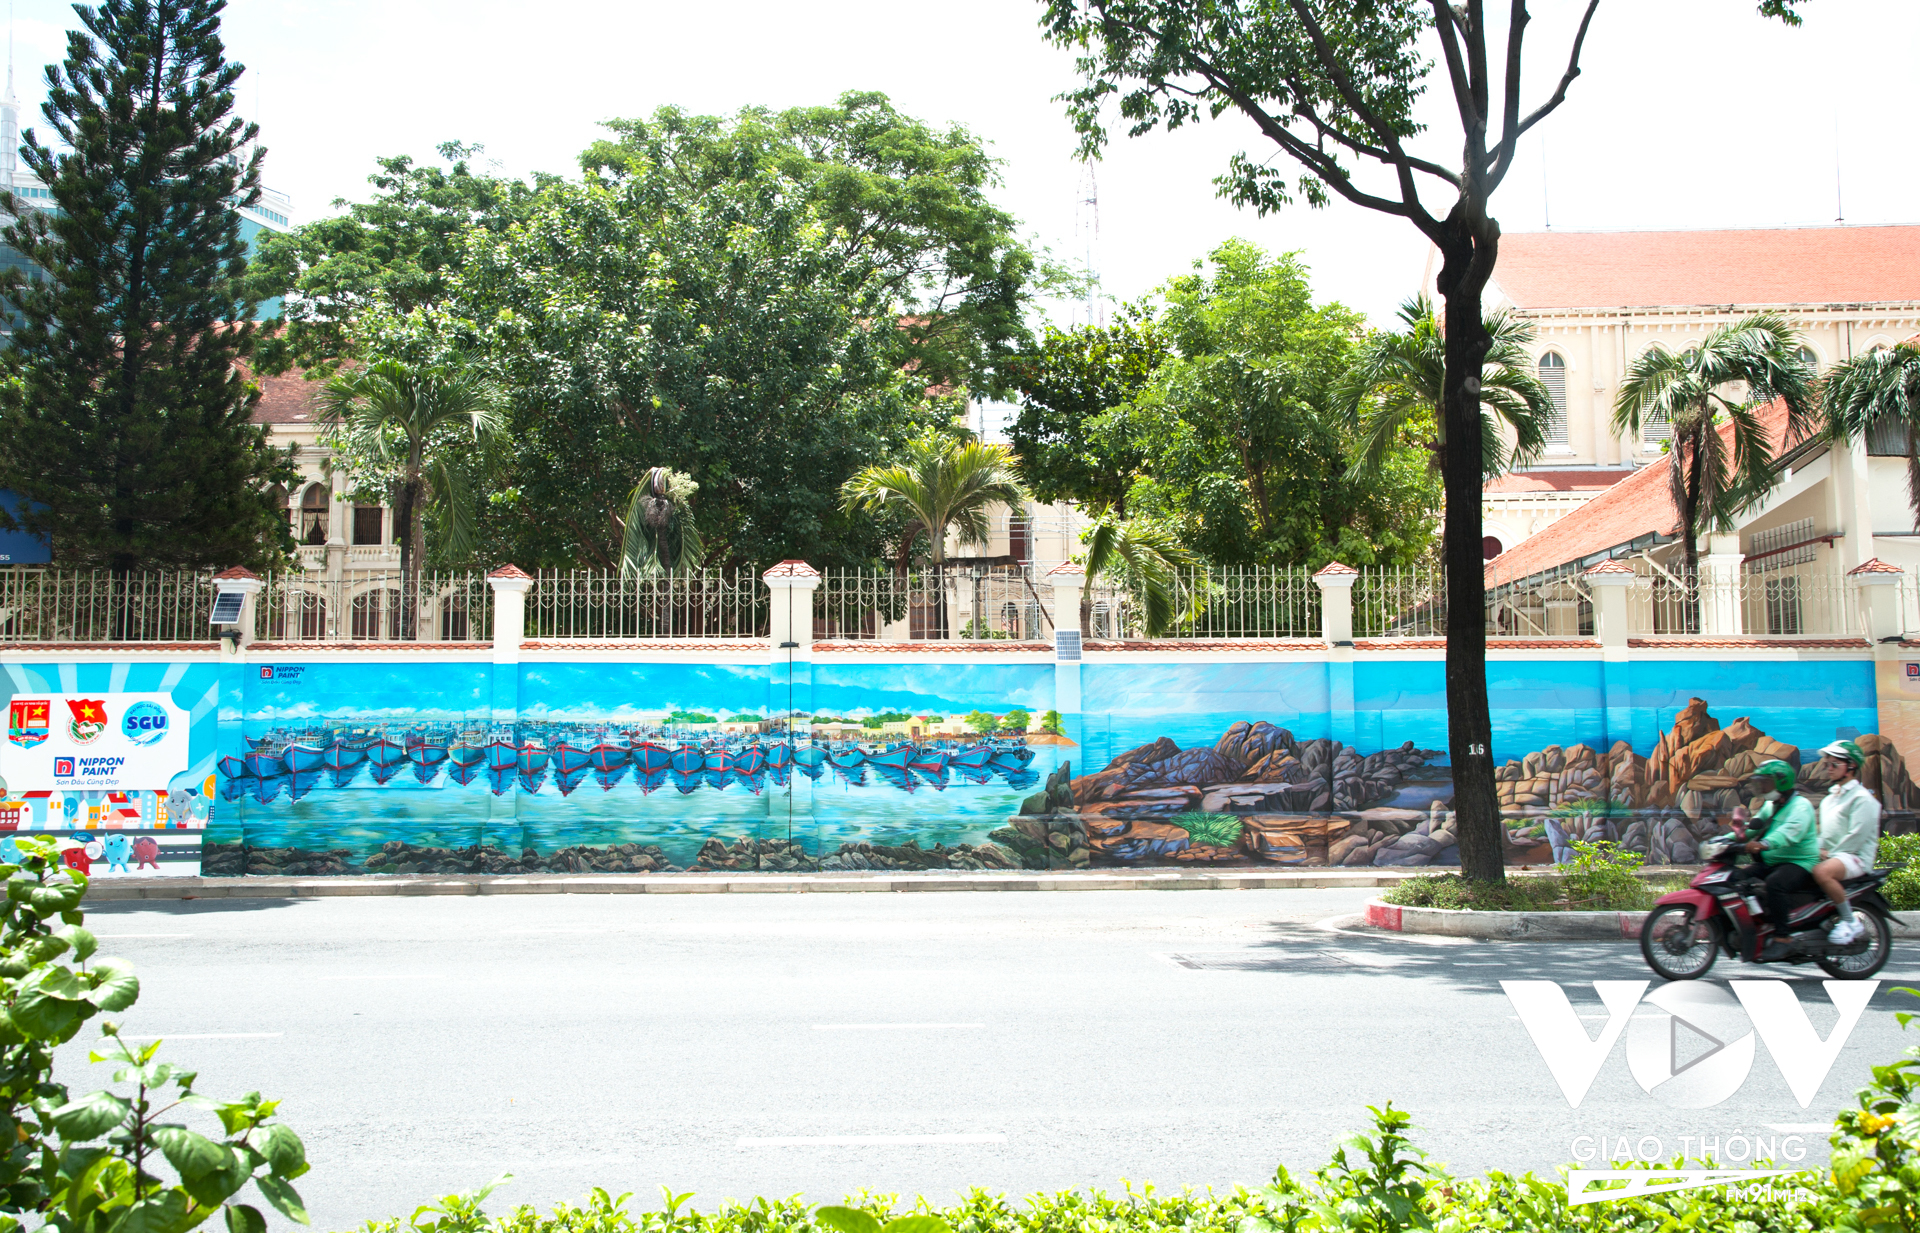 Được biết, công trình đường tranh bích họa mang tên 'Việt Nam tươi đẹp' do Đoàn Thanh niên Công an TPHCM phối hợp cùng Đoàn trường Đại học Sài Gòn cùng nhà tài trợ thực hiện với nhiều tâm huyết vì một thành phố xanh - sạch - đẹp.